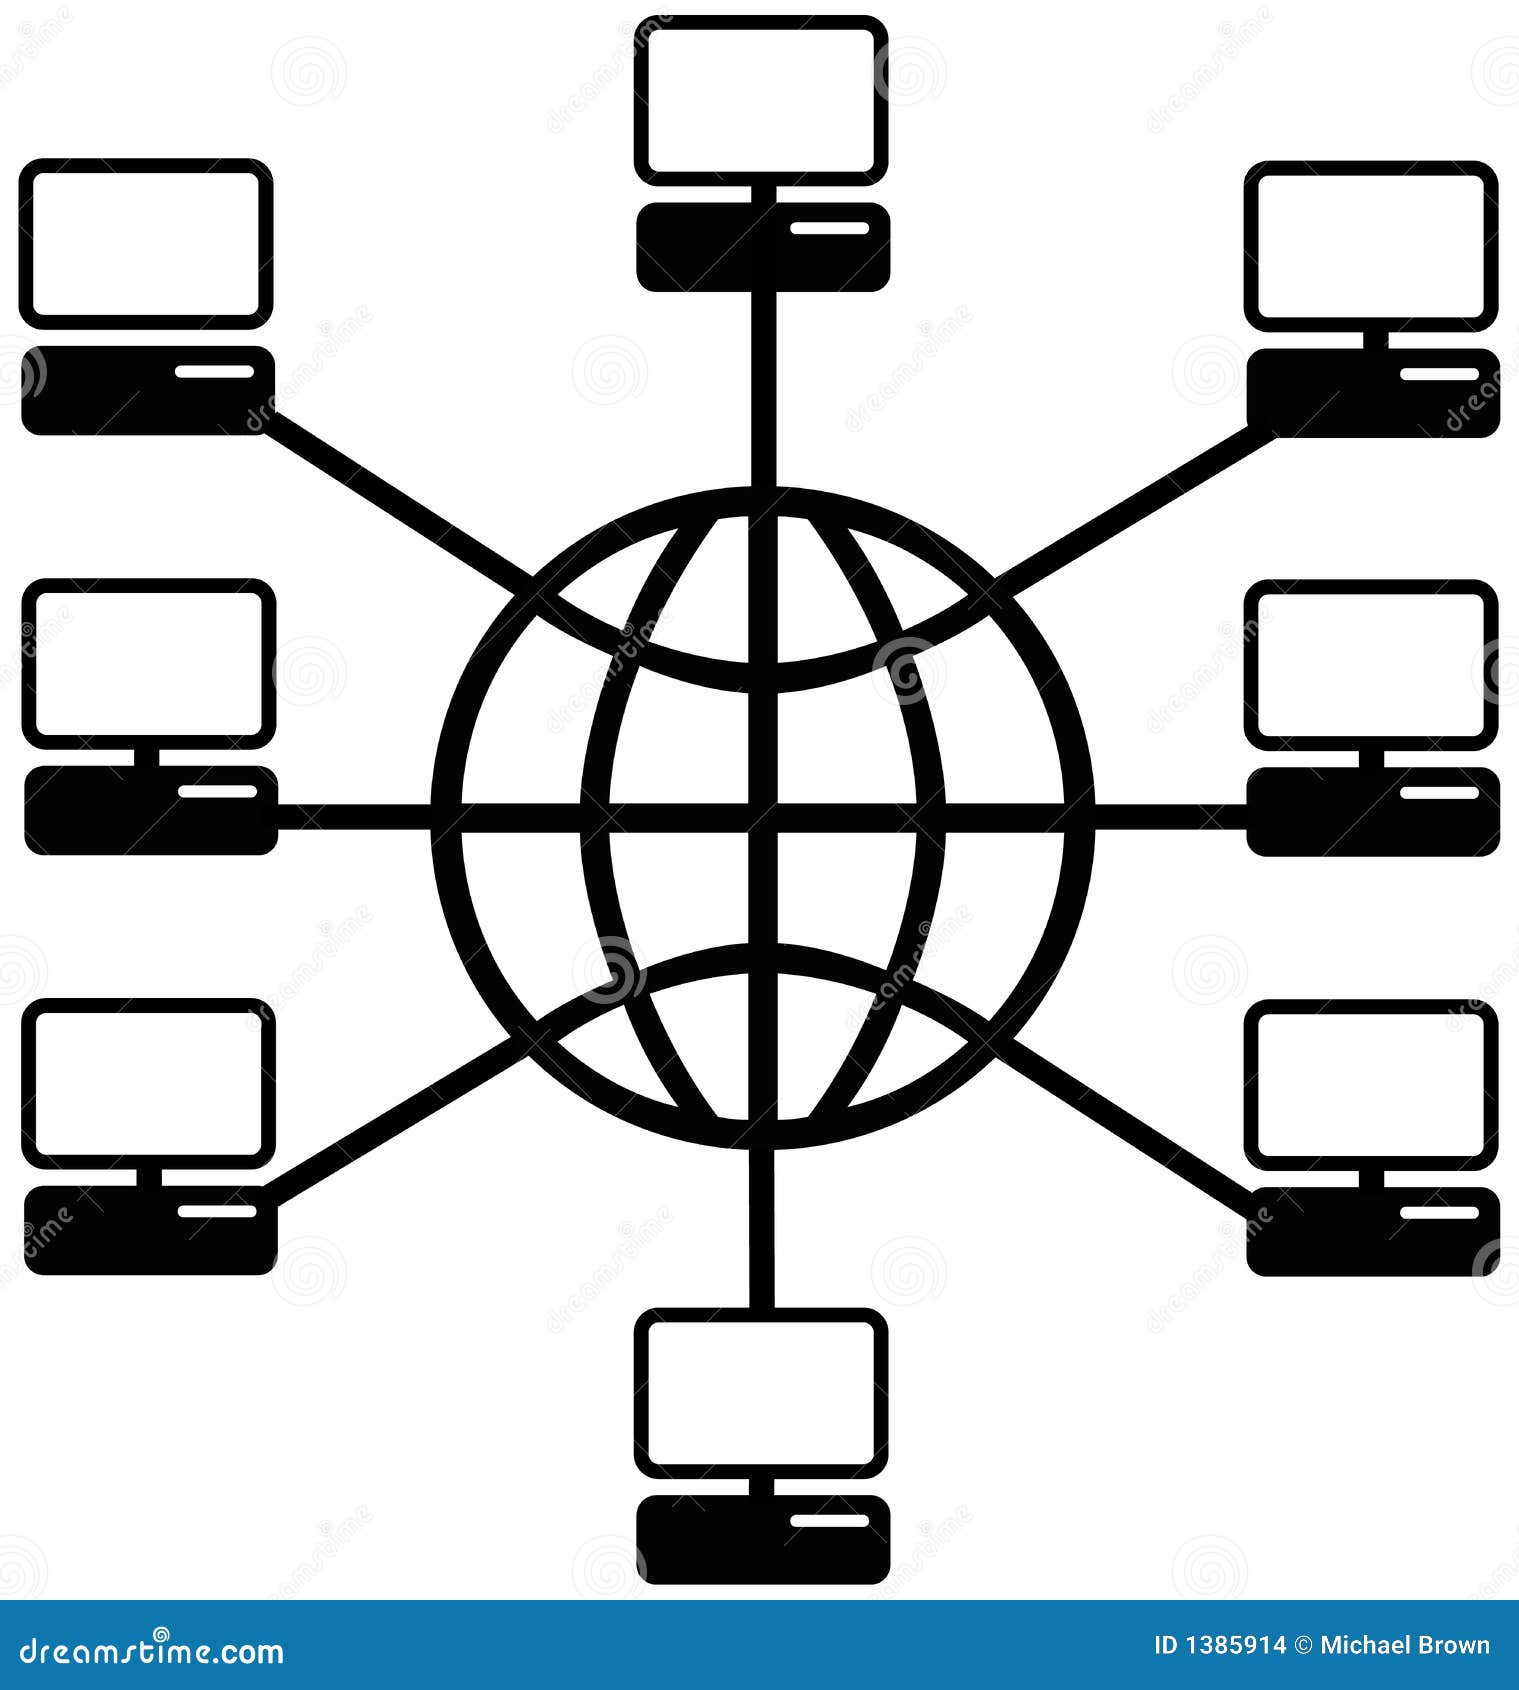 Peer user. Компьютерные сети. Локальная сеть. Значок локальной сети. Локальная сеть иконка.